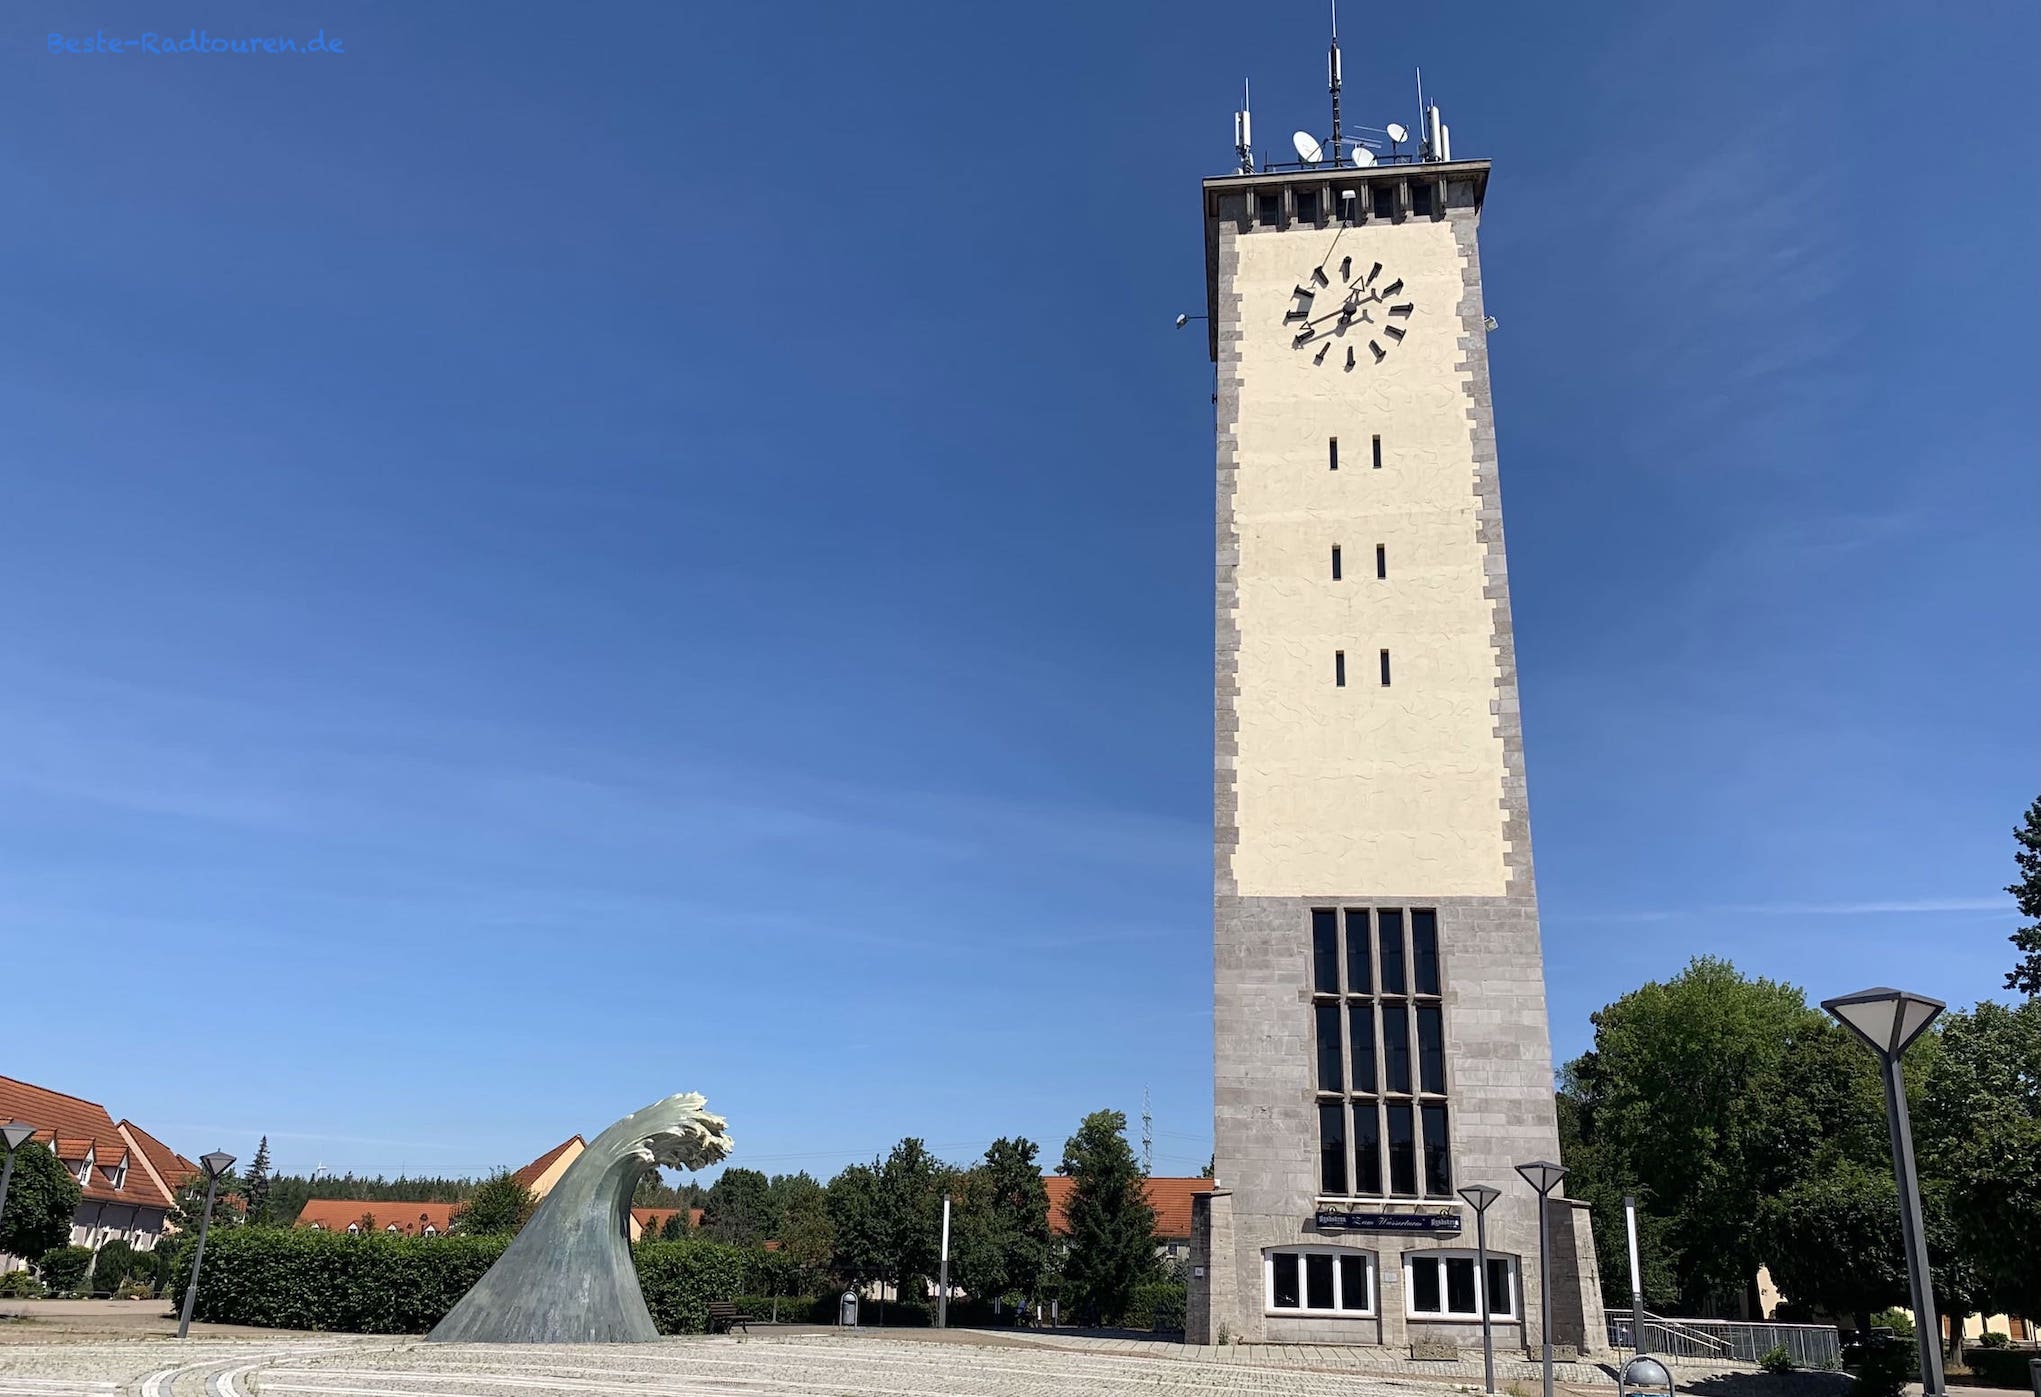 Wahrzeichen im Zentrum von Schwarzheide: Wasserturm und Kunstobjekt Brunnen "Die Welle"